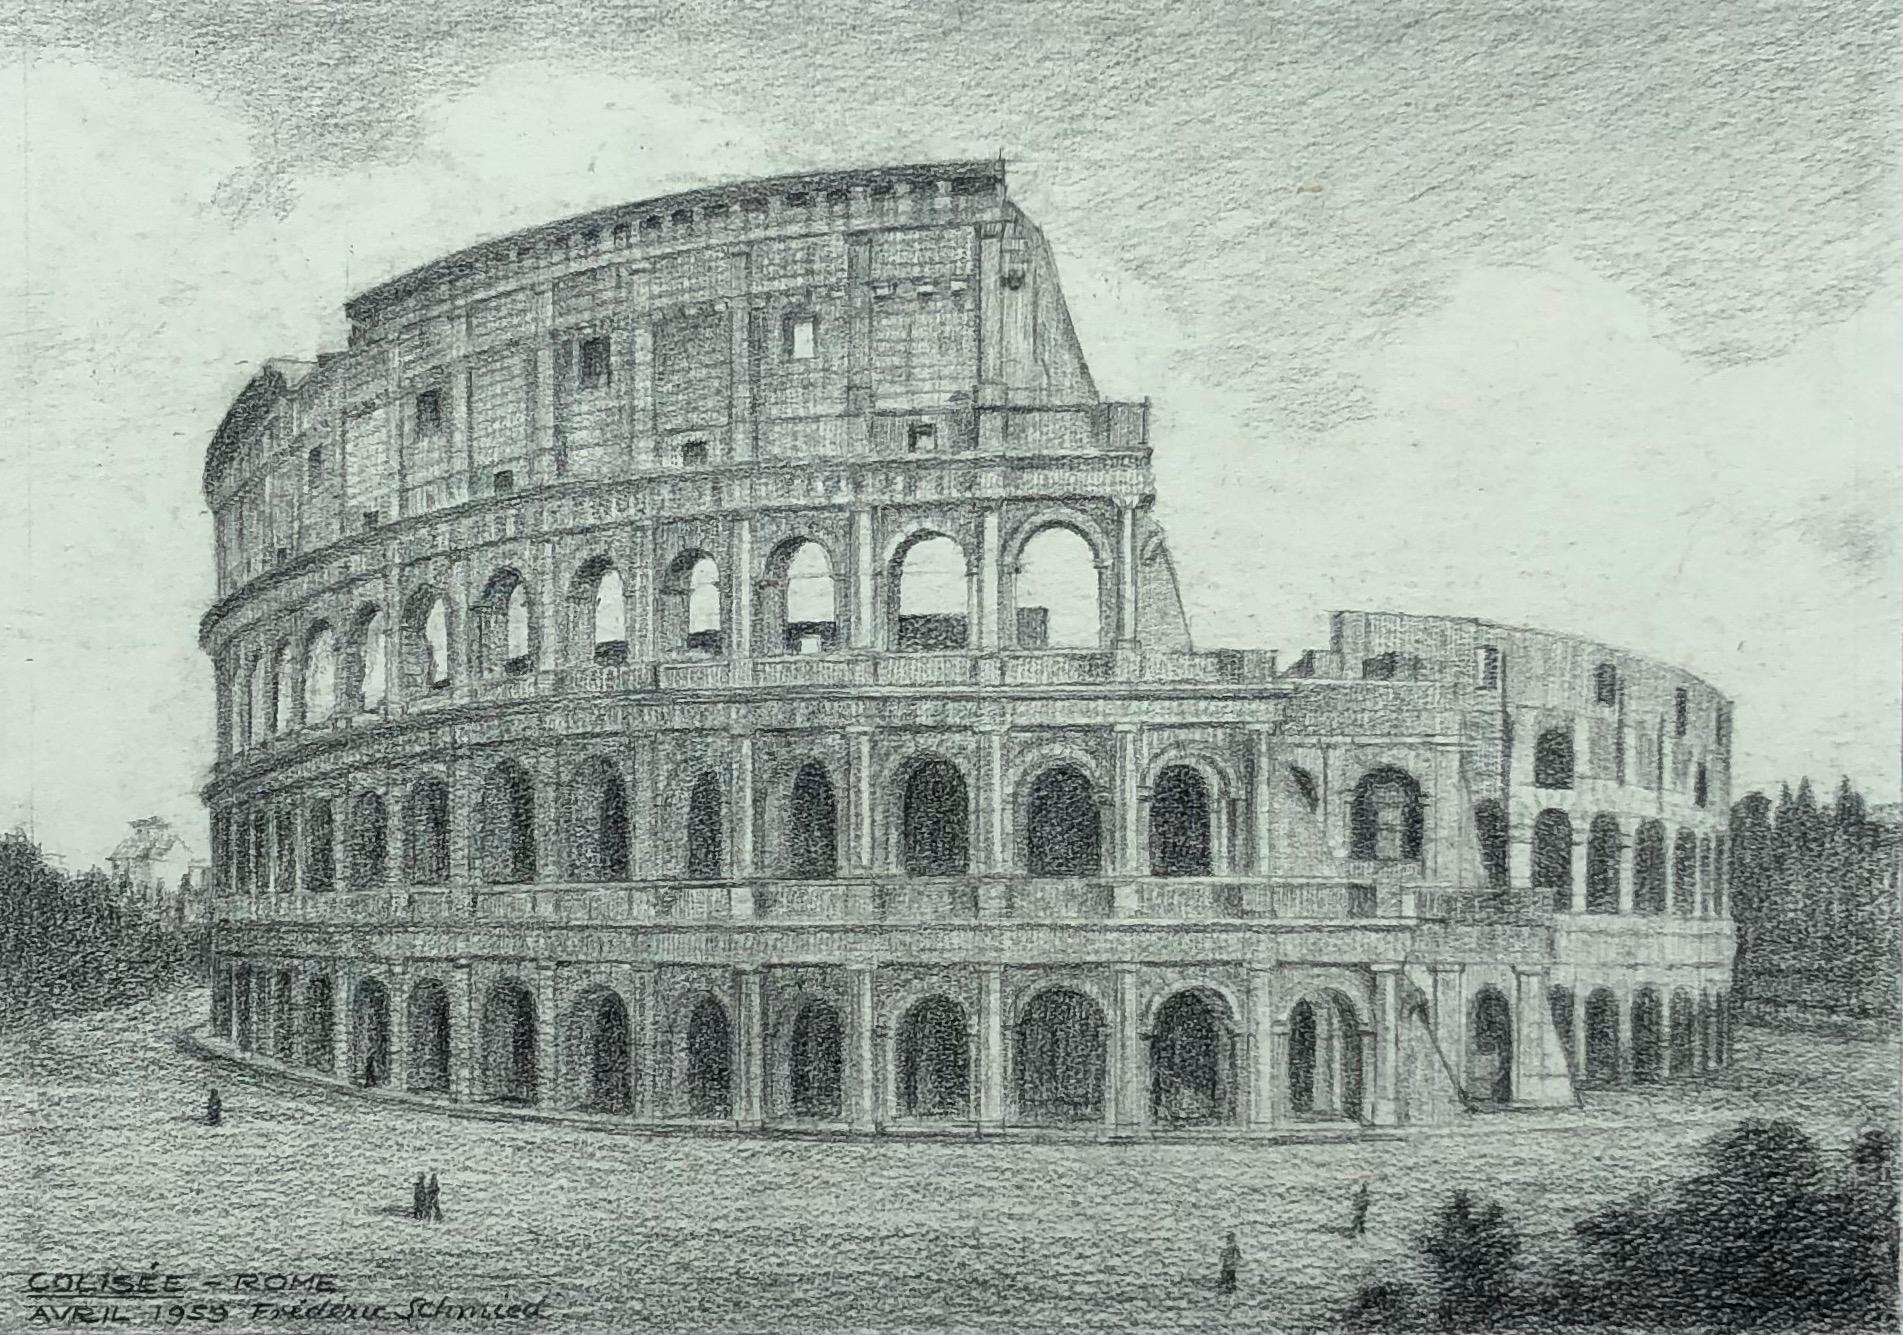 Colisée, Rome - Art by Frédéric Schmied